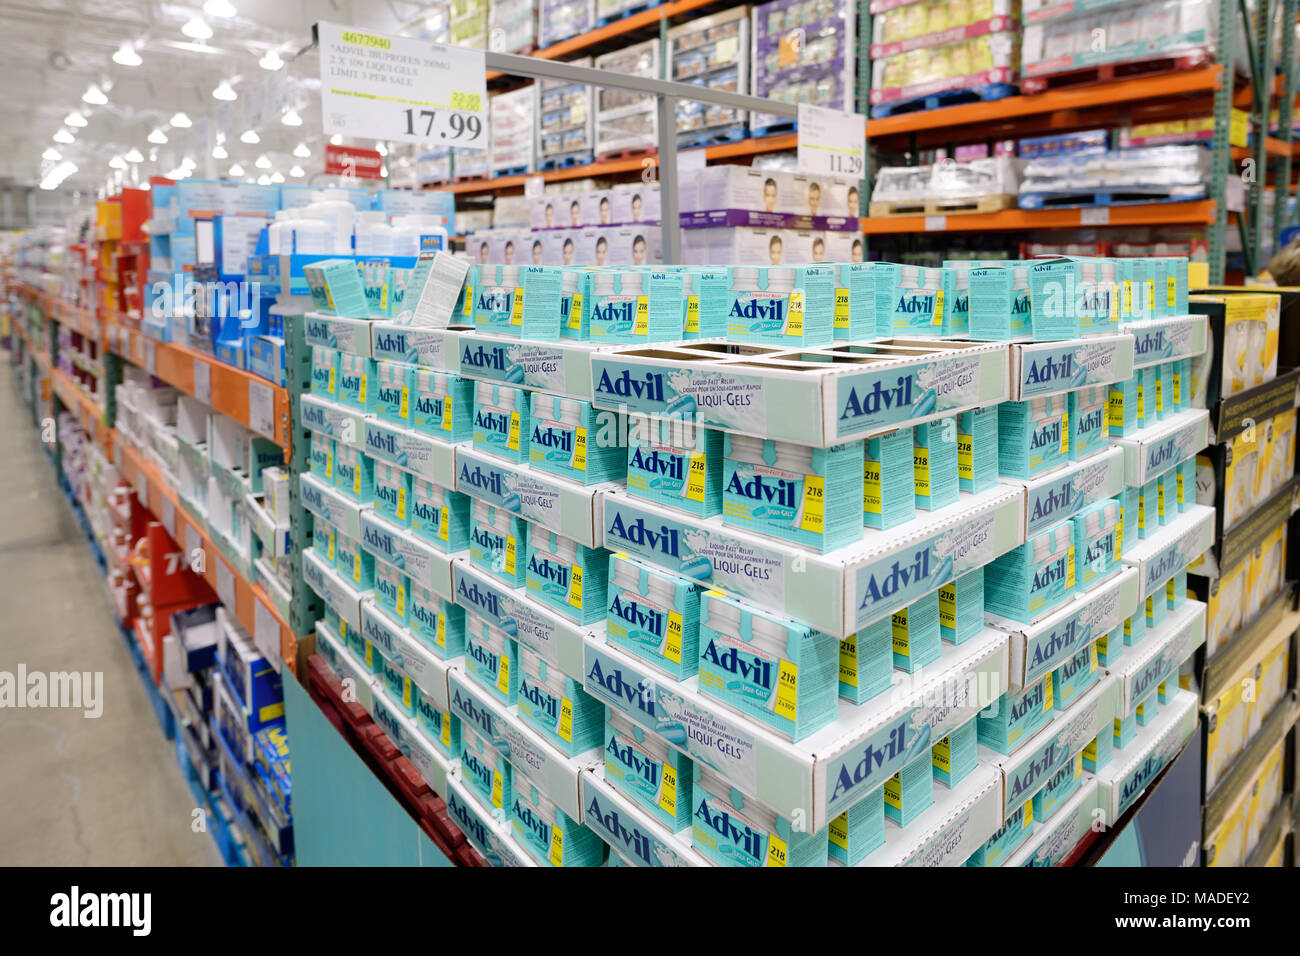 L'Advil Liqui-gels par des médicaments anti-douleur magasin-entrepôt Costco Wholesale Membership section pharmacie. Colombie-britannique, Canada 2017. Banque D'Images